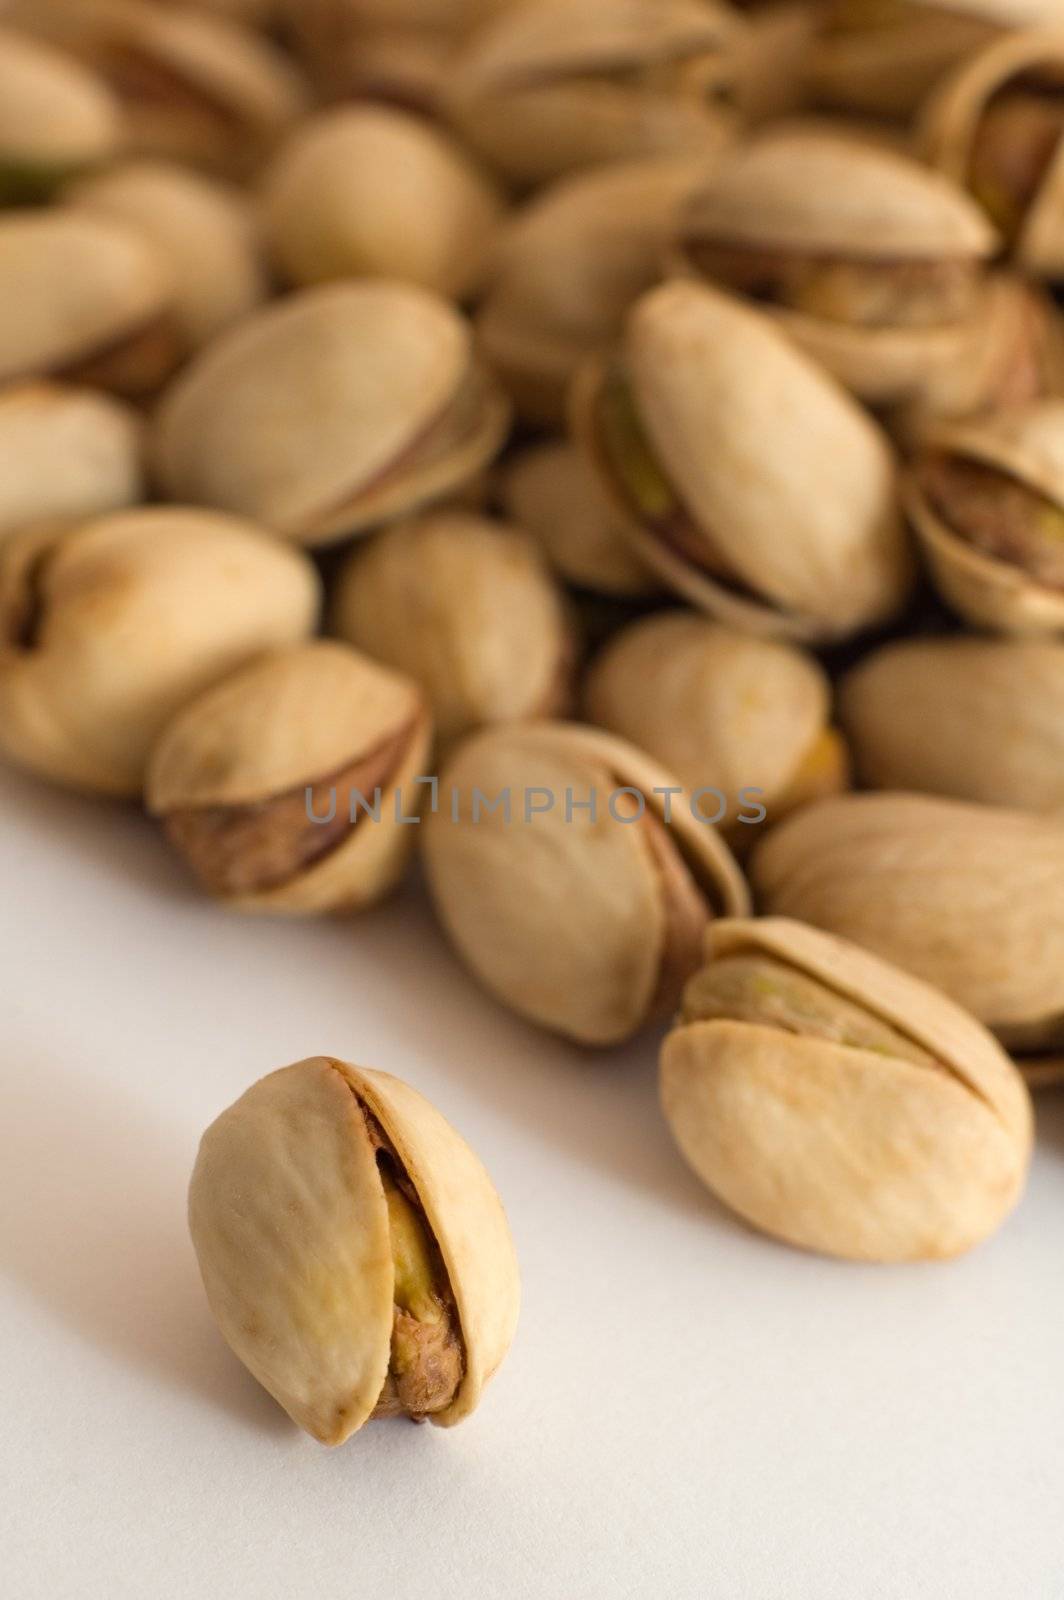 multiple salted pistachios, warm brown color, distance blur